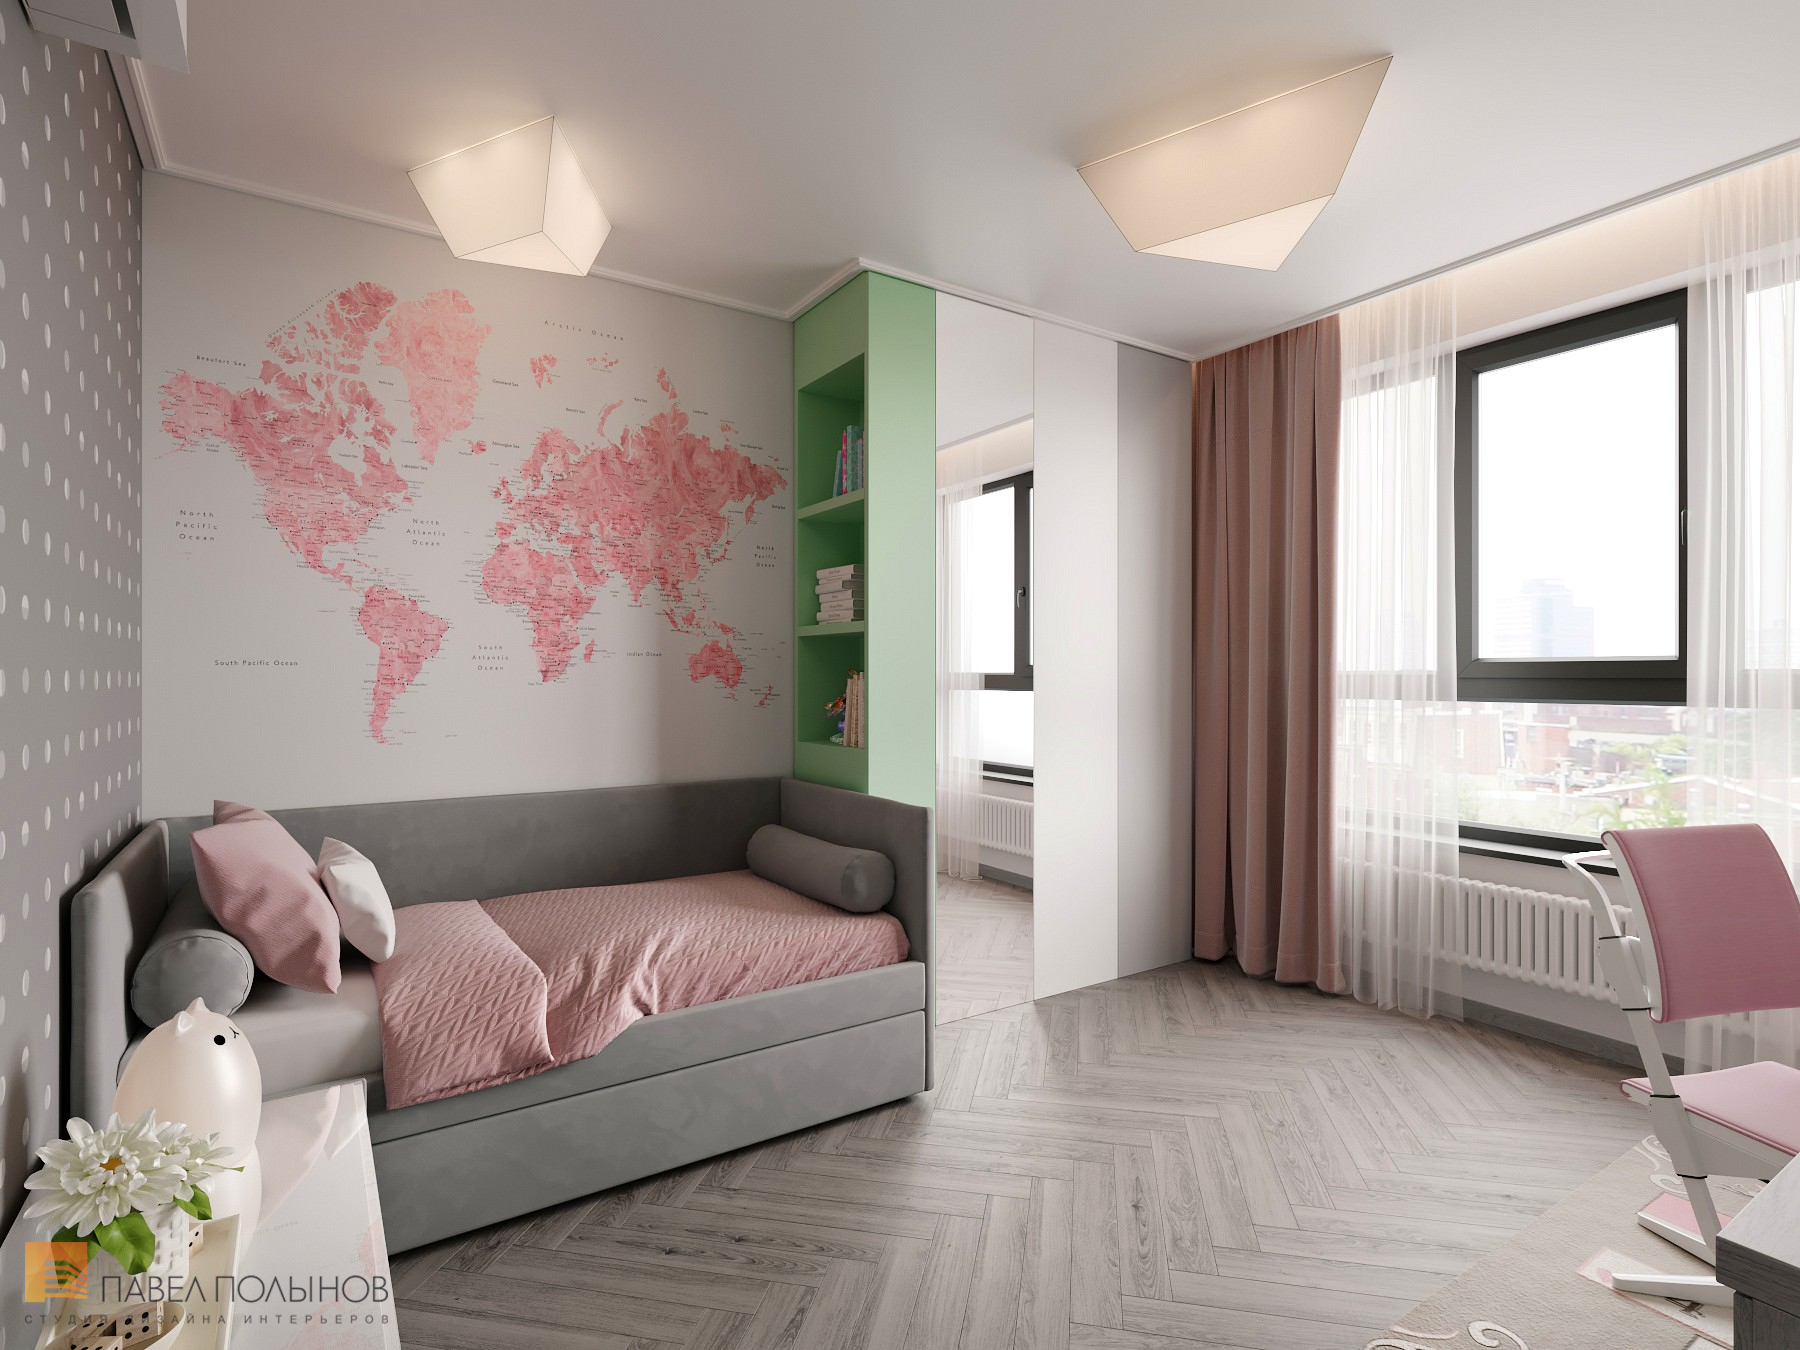 Фото дизайн детской комнаты для девочки из проекта «Интерьер квартиры в скандинавском стиле, ЖК «Silver», 146 кв.м.»